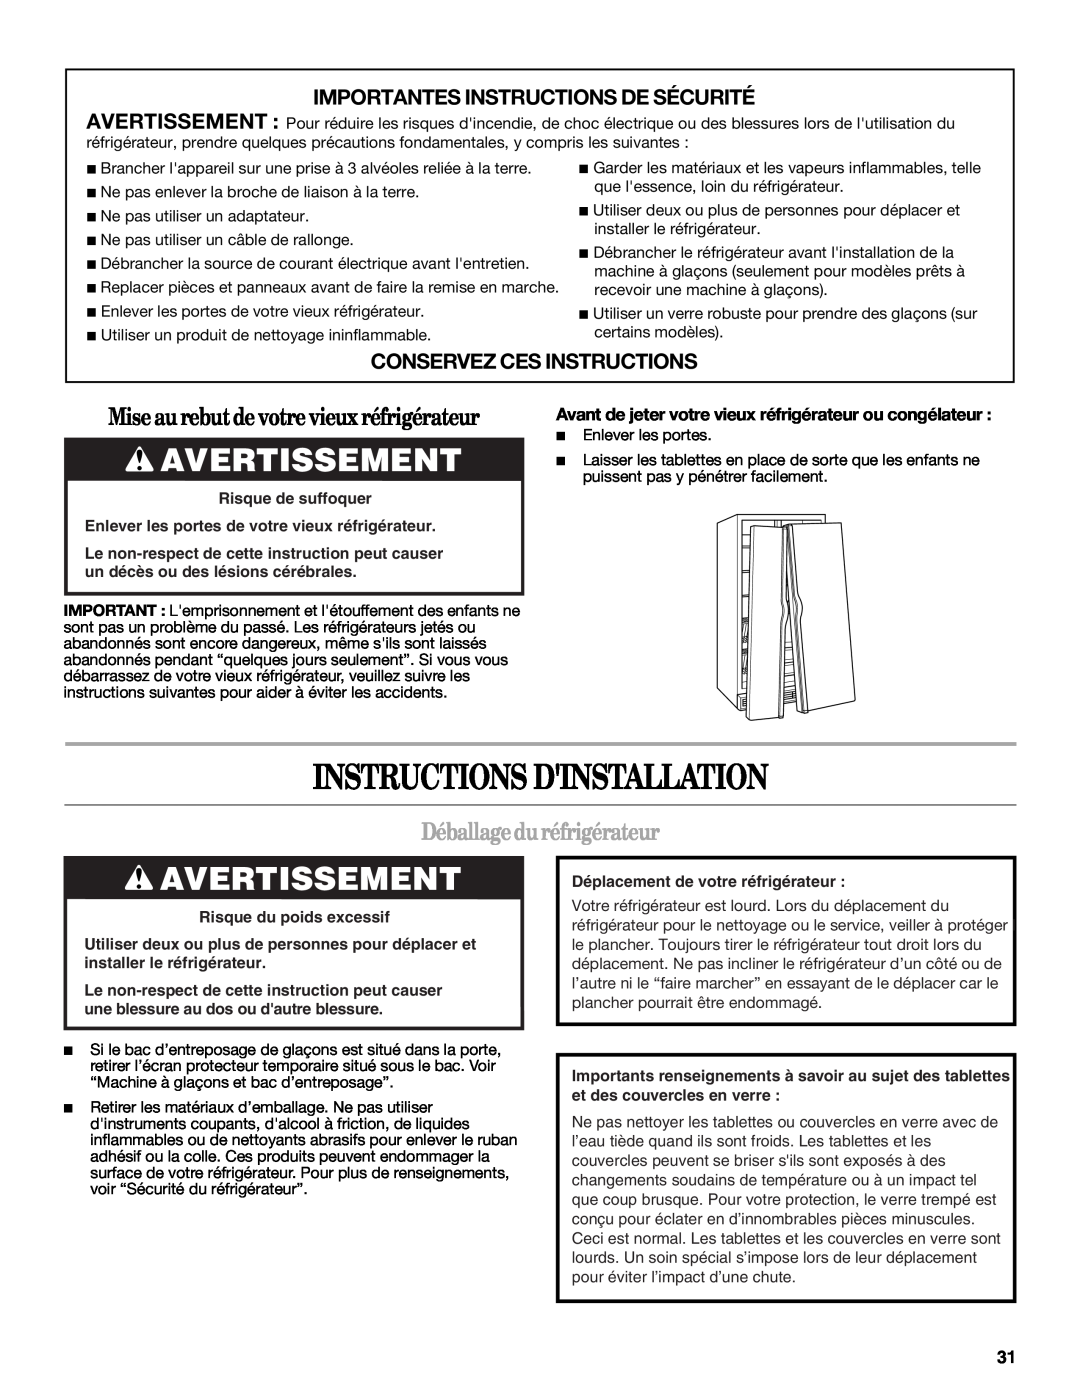 Whirlpool ED2LHAXMQ00, ED2LHAXML10 warranty Instructions Dinstallation, Avertissement, Miseau rebutdevotrevieuxréfrigérateur 